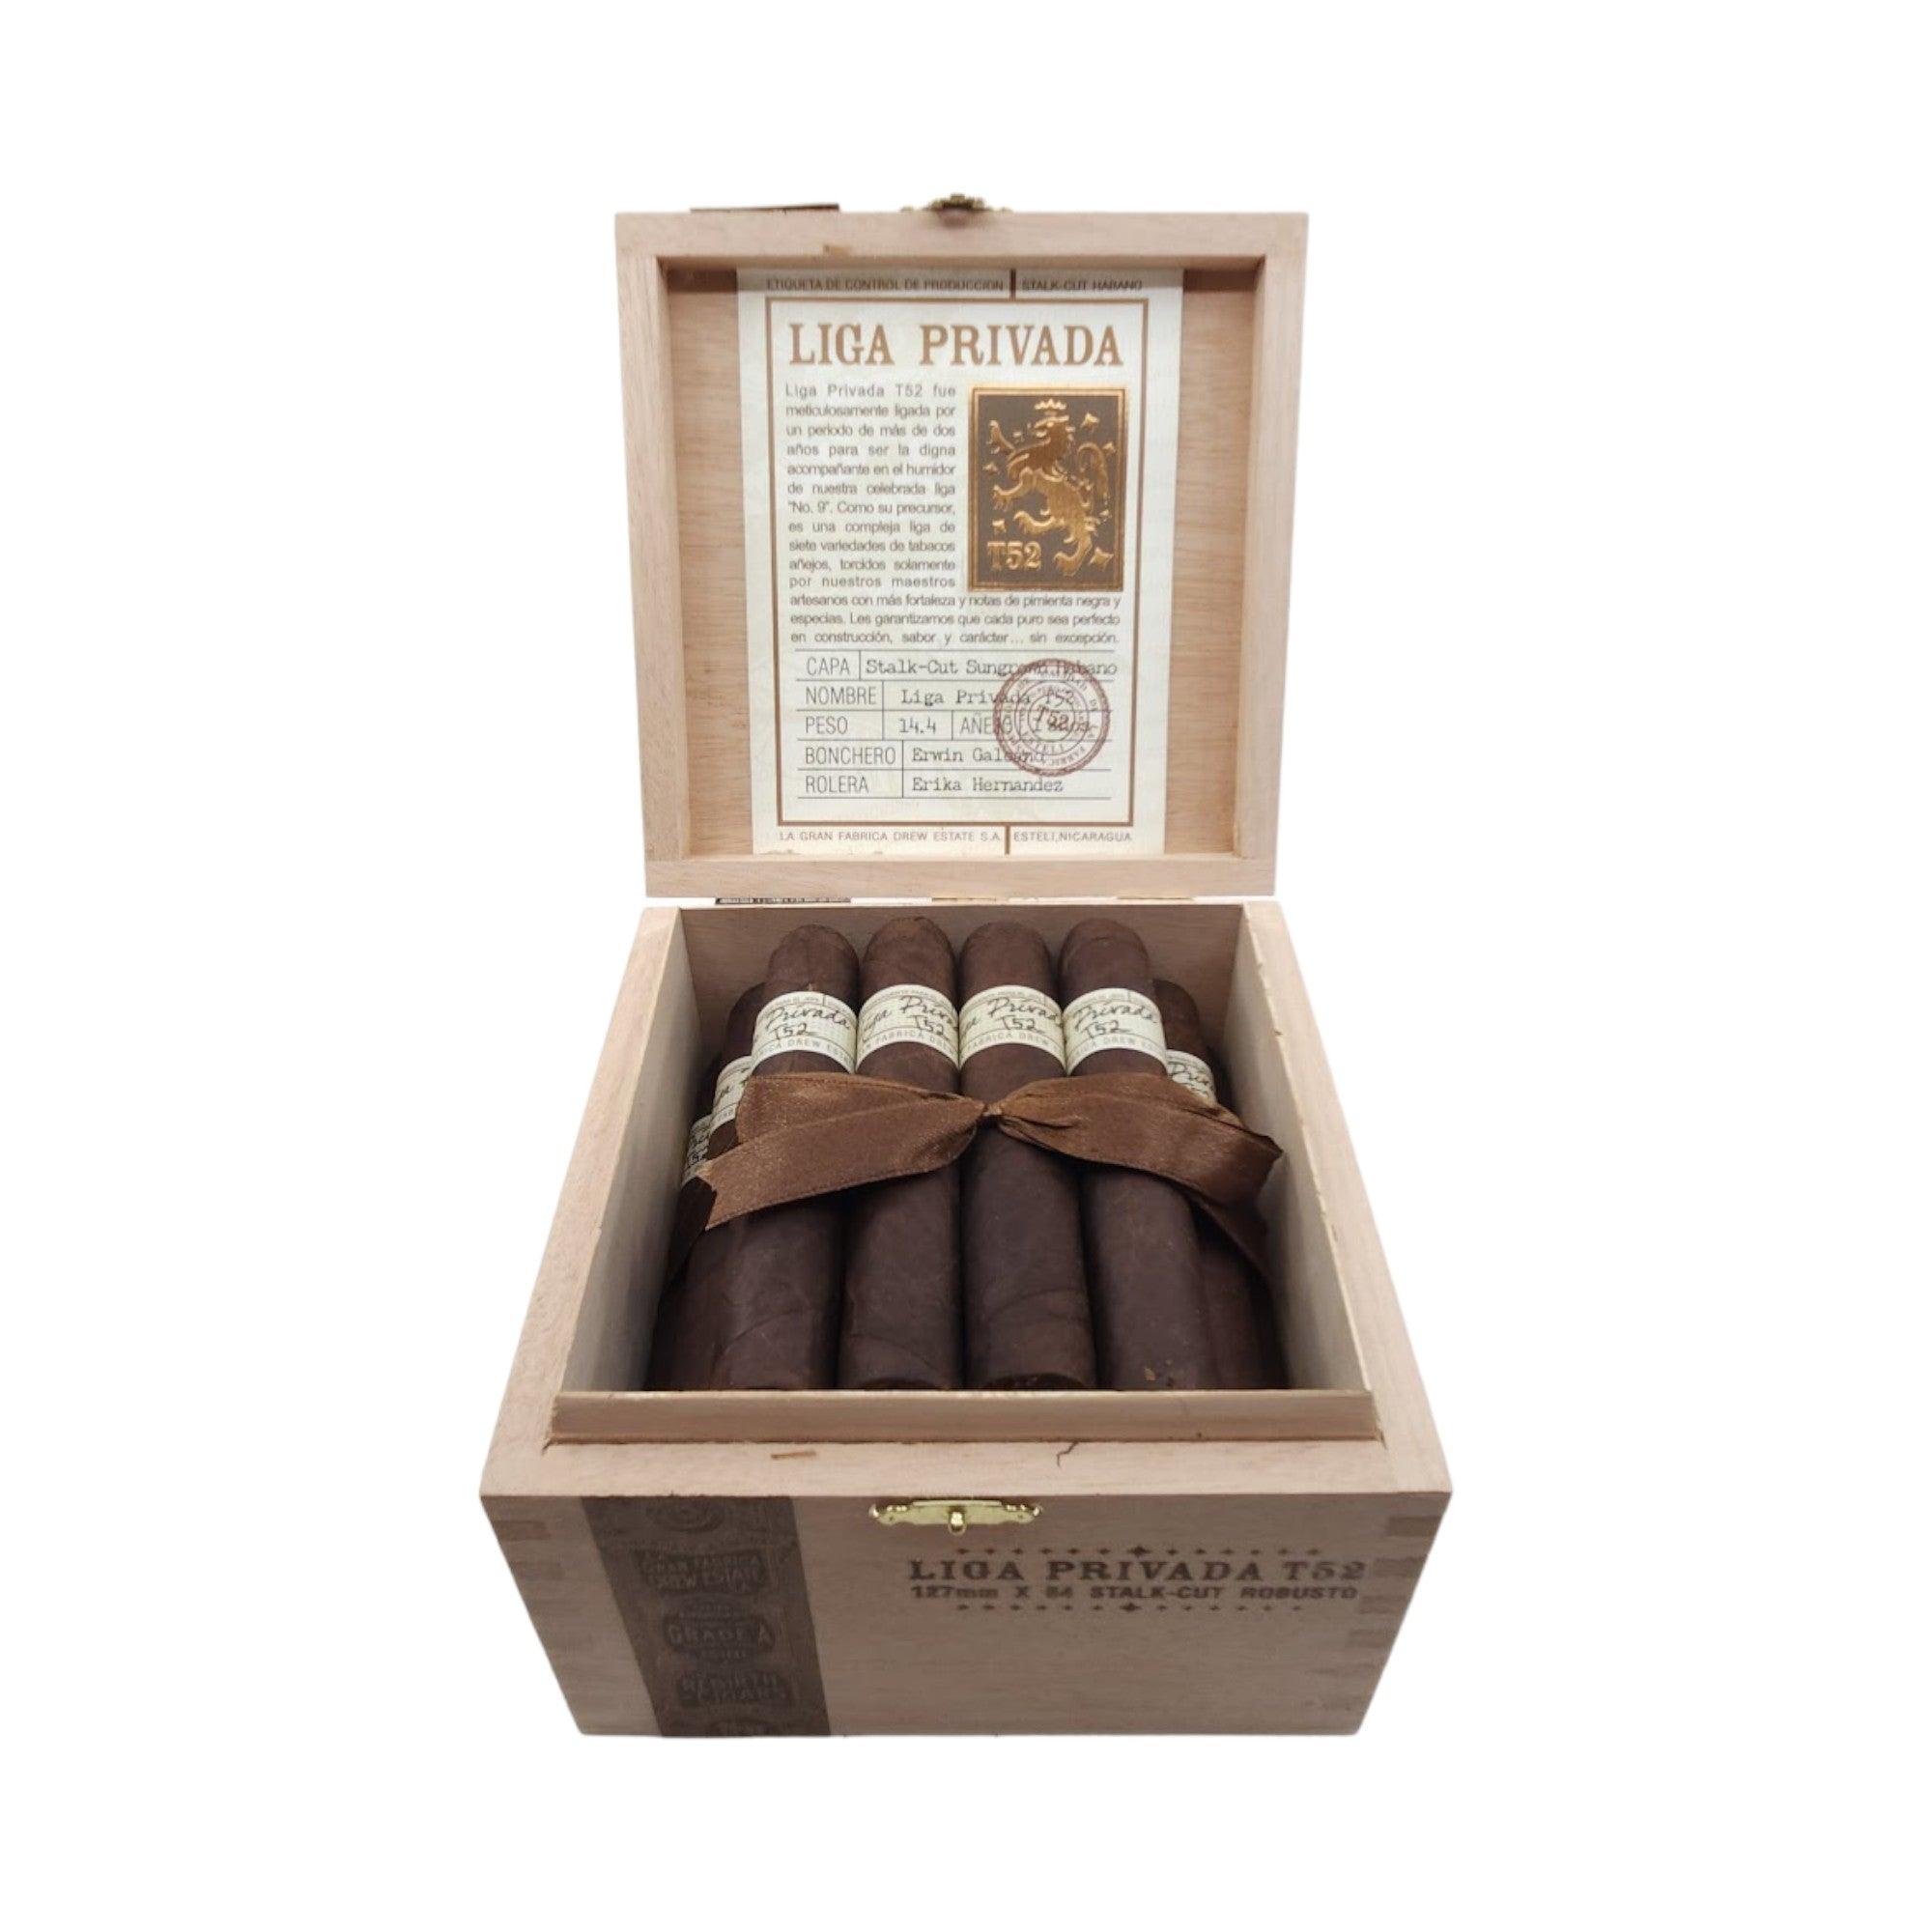 Drew Estate Cigar | Liga Privada T52 Robusto | Box 24 - HK CohCigars